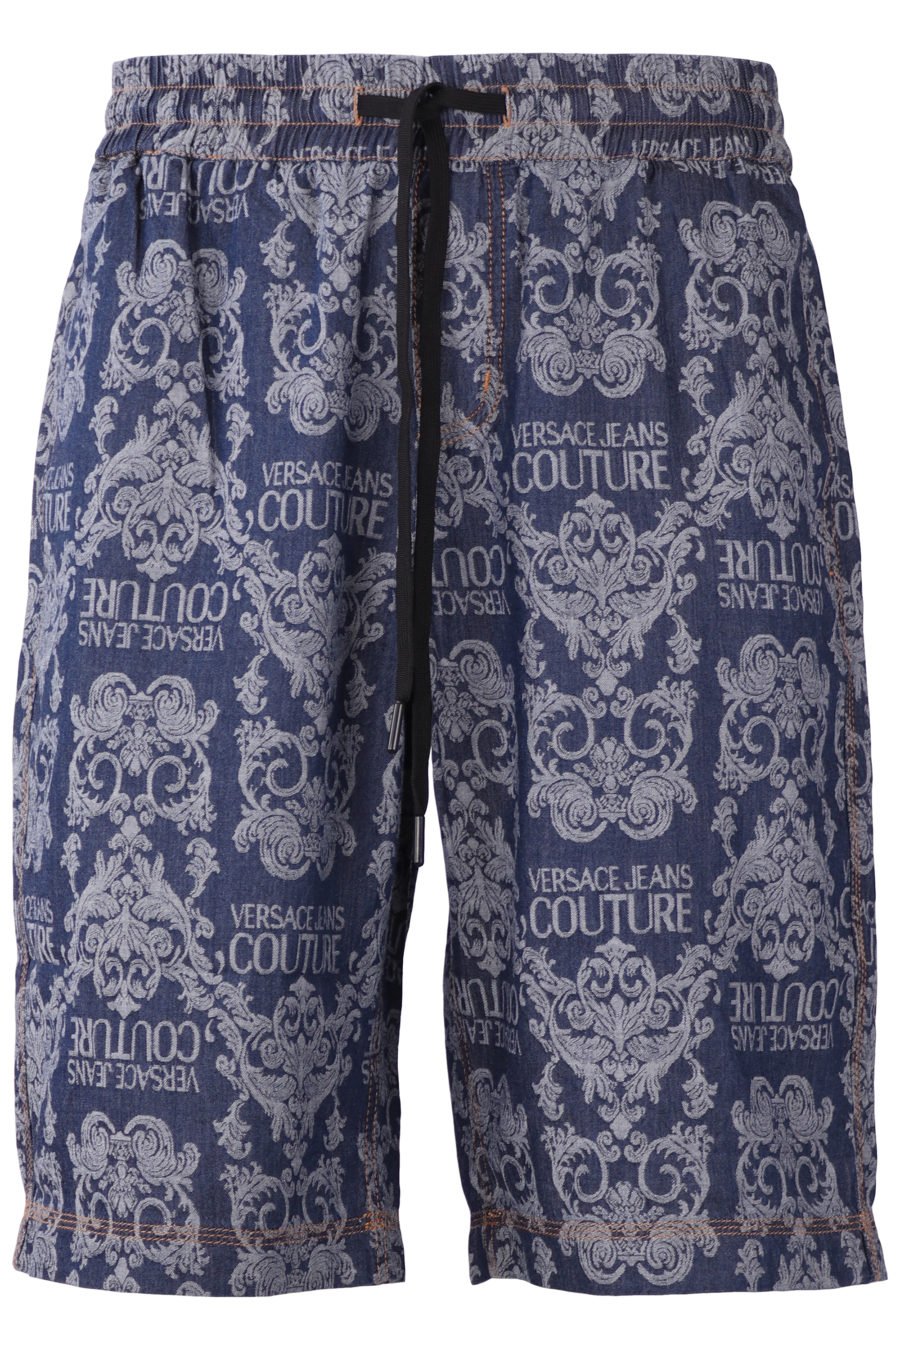 Short Versace Jeans Couture avec imprimé baroque - IMG 0849